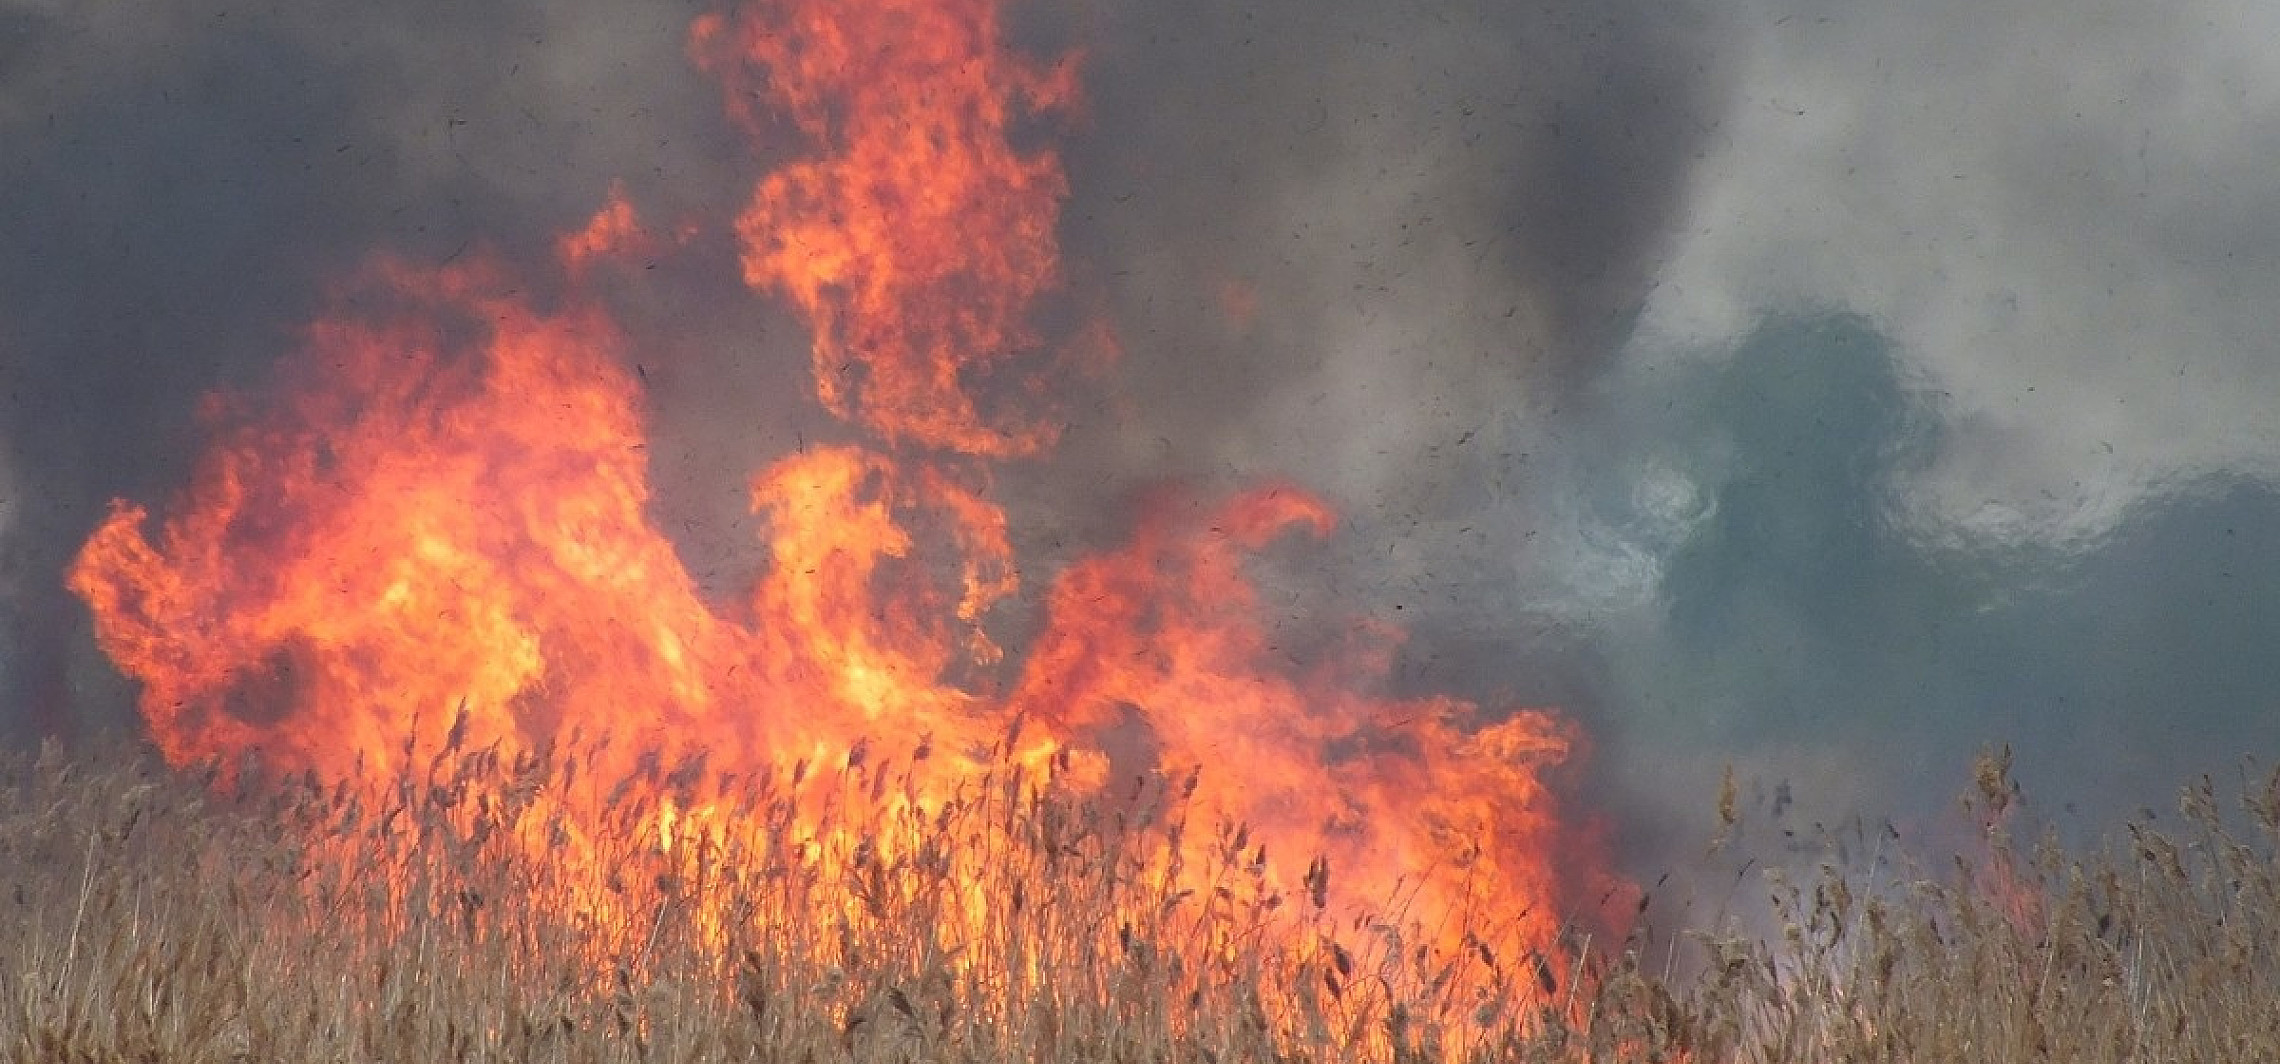 Inowrocław - Duży pożar trzcinowisk nad Gopłem